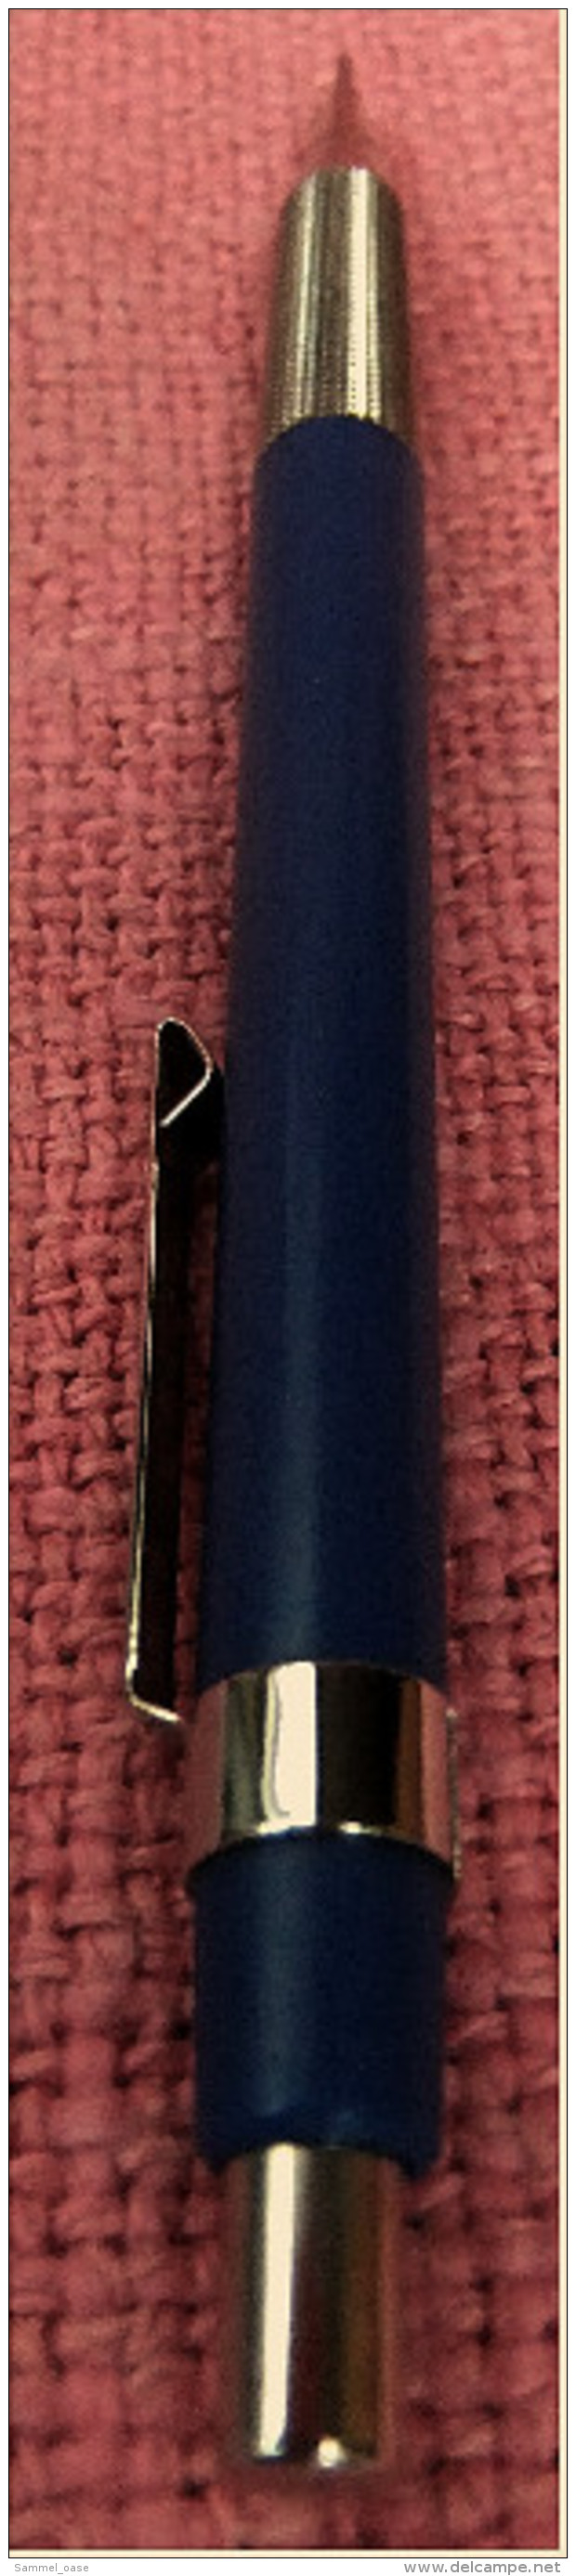 Seltener Staedtler Micrograph F 77017 Bleistift / Druckbleistift - Mechanical Pencil 0,7 Mm - Blau - Schreibgerät